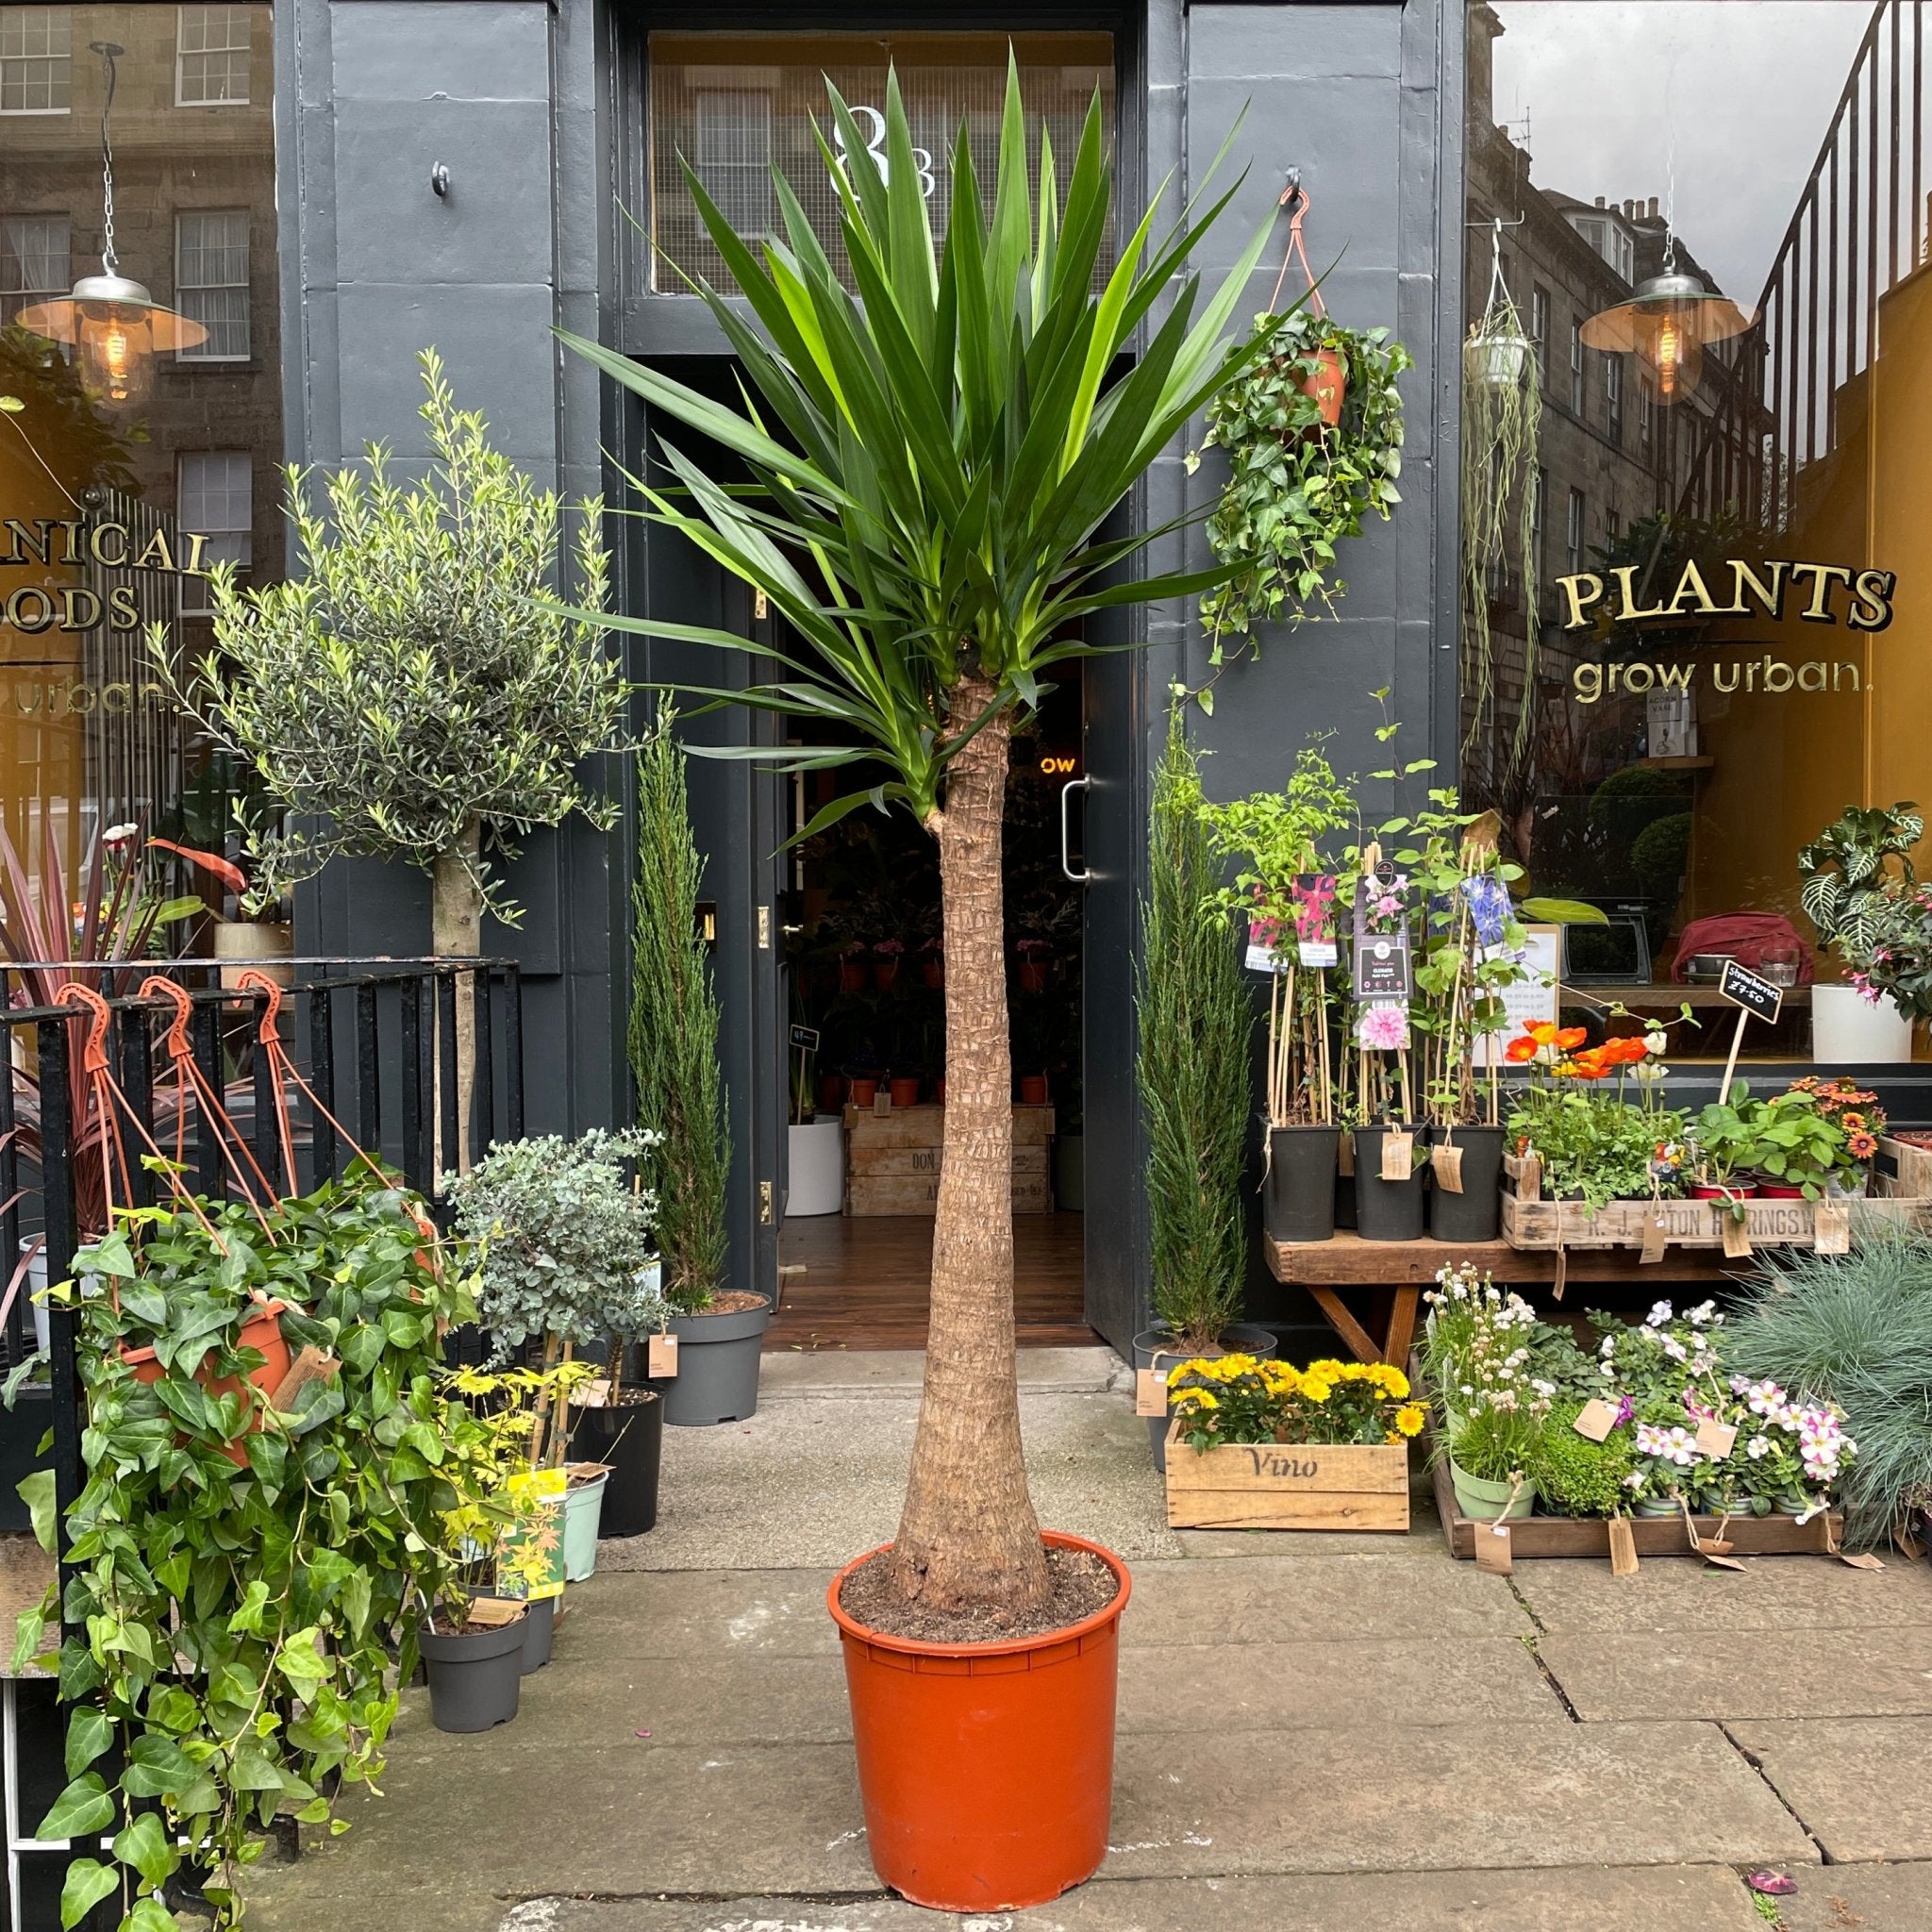 Yucca (180cm) - grow urban. UK